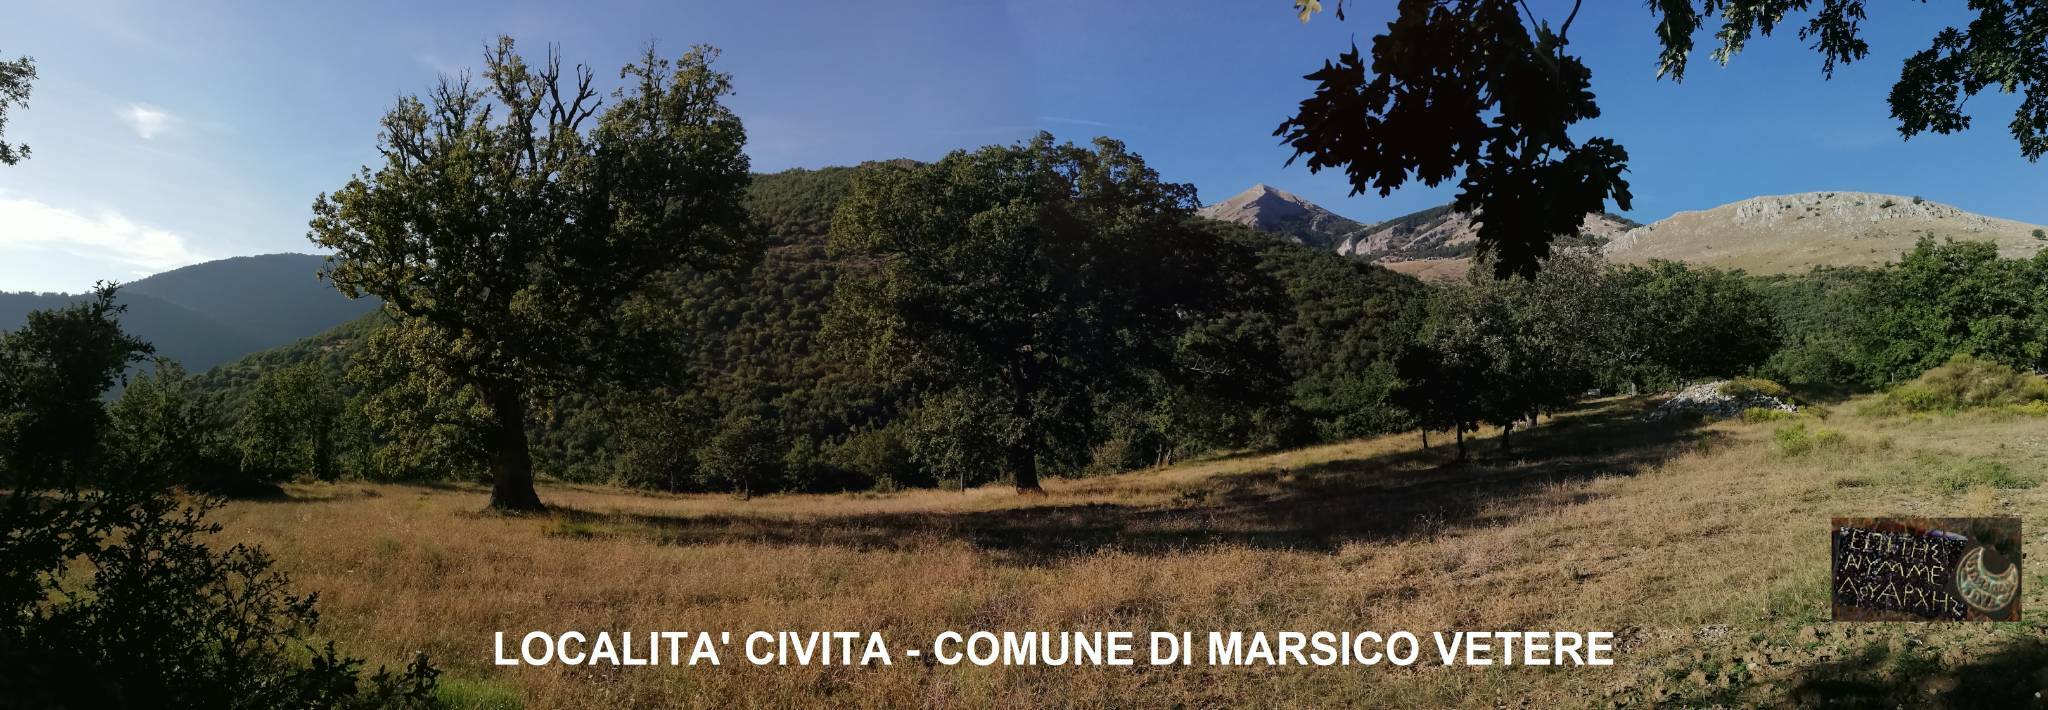 Località Civita Marsicovetere